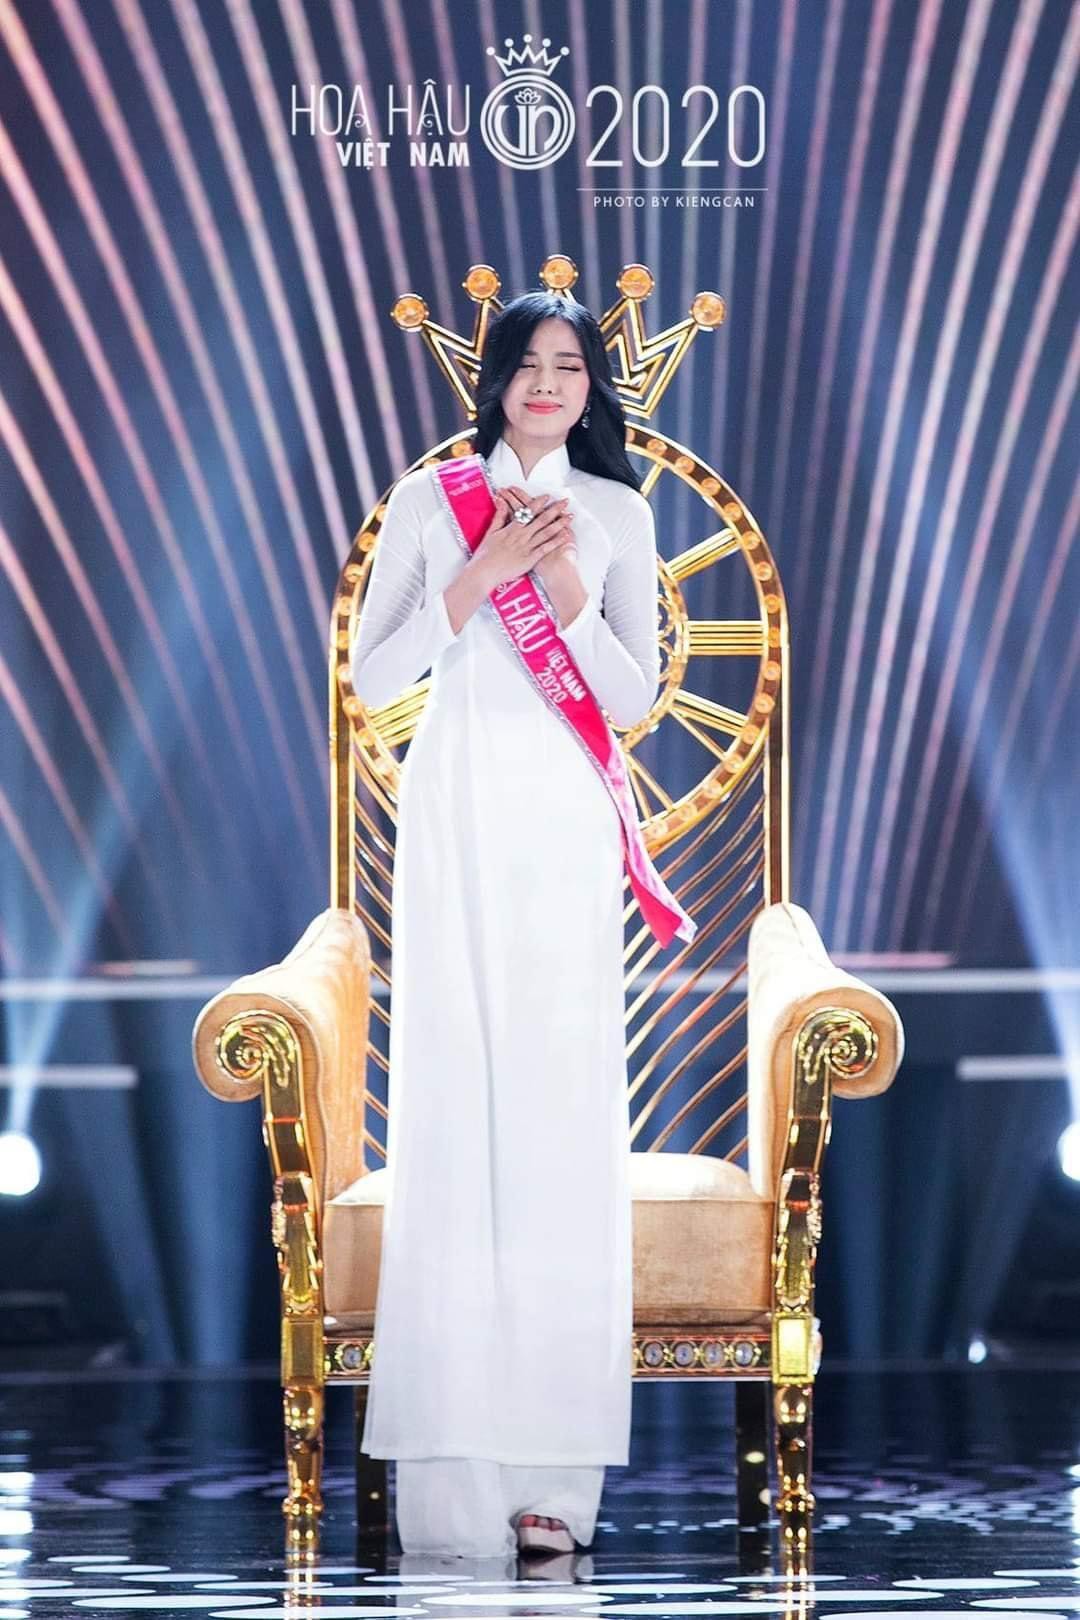 Nhìn lại loạt khoảnh khắc đăng quang của Hoa hậu Đỗ Thị Hà gần 1 năm trước - Ảnh 5